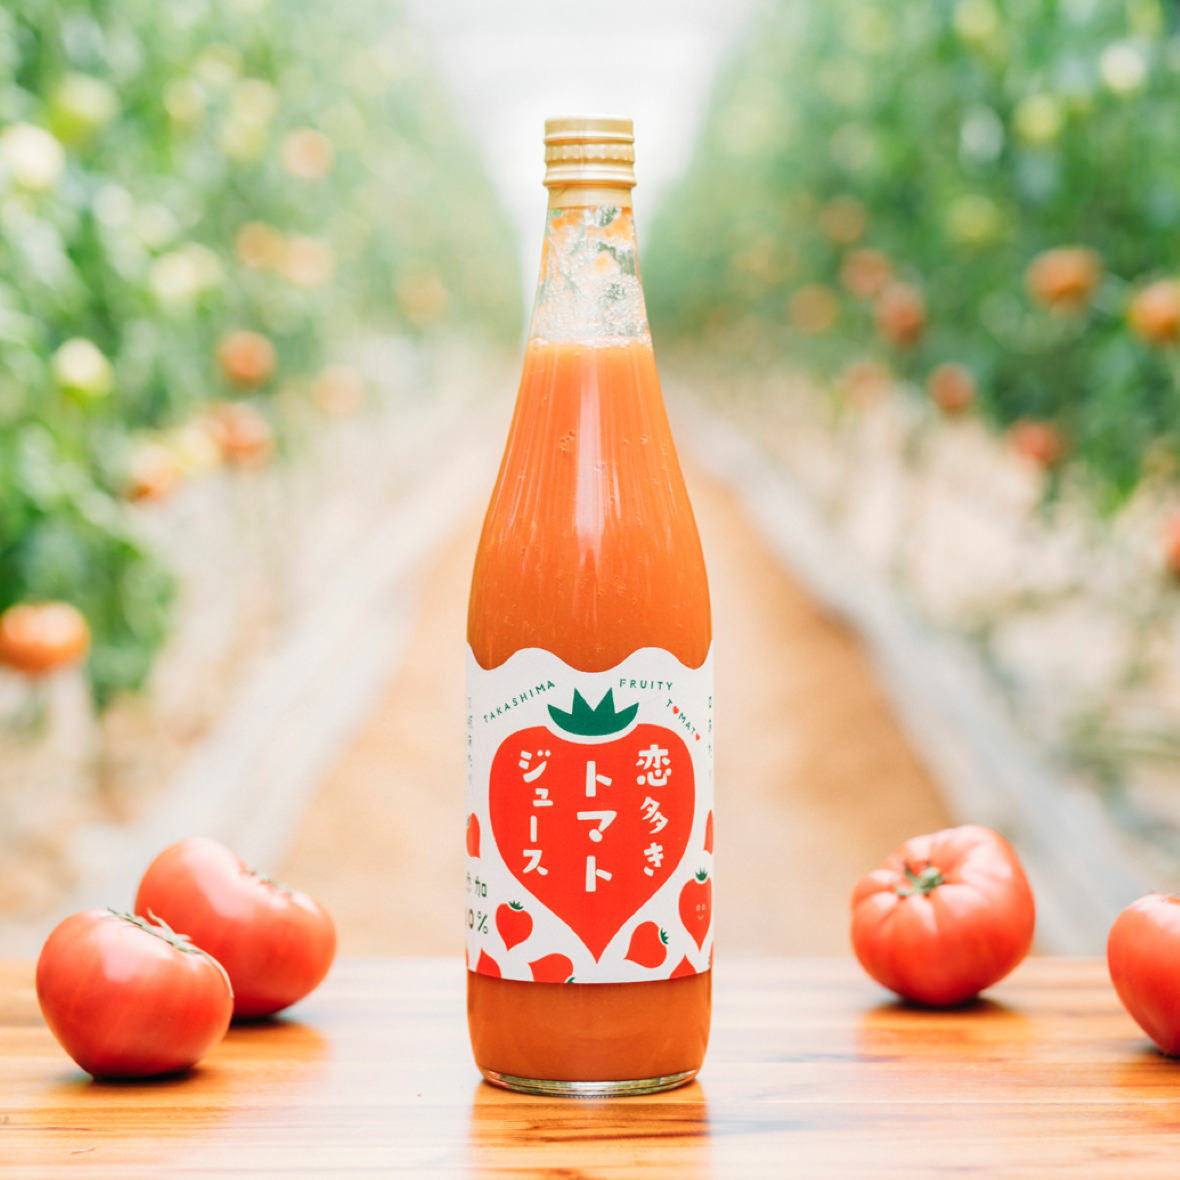 恋多きトマトジュース | たかしま農園 | 長崎・高島のフルーツトマト